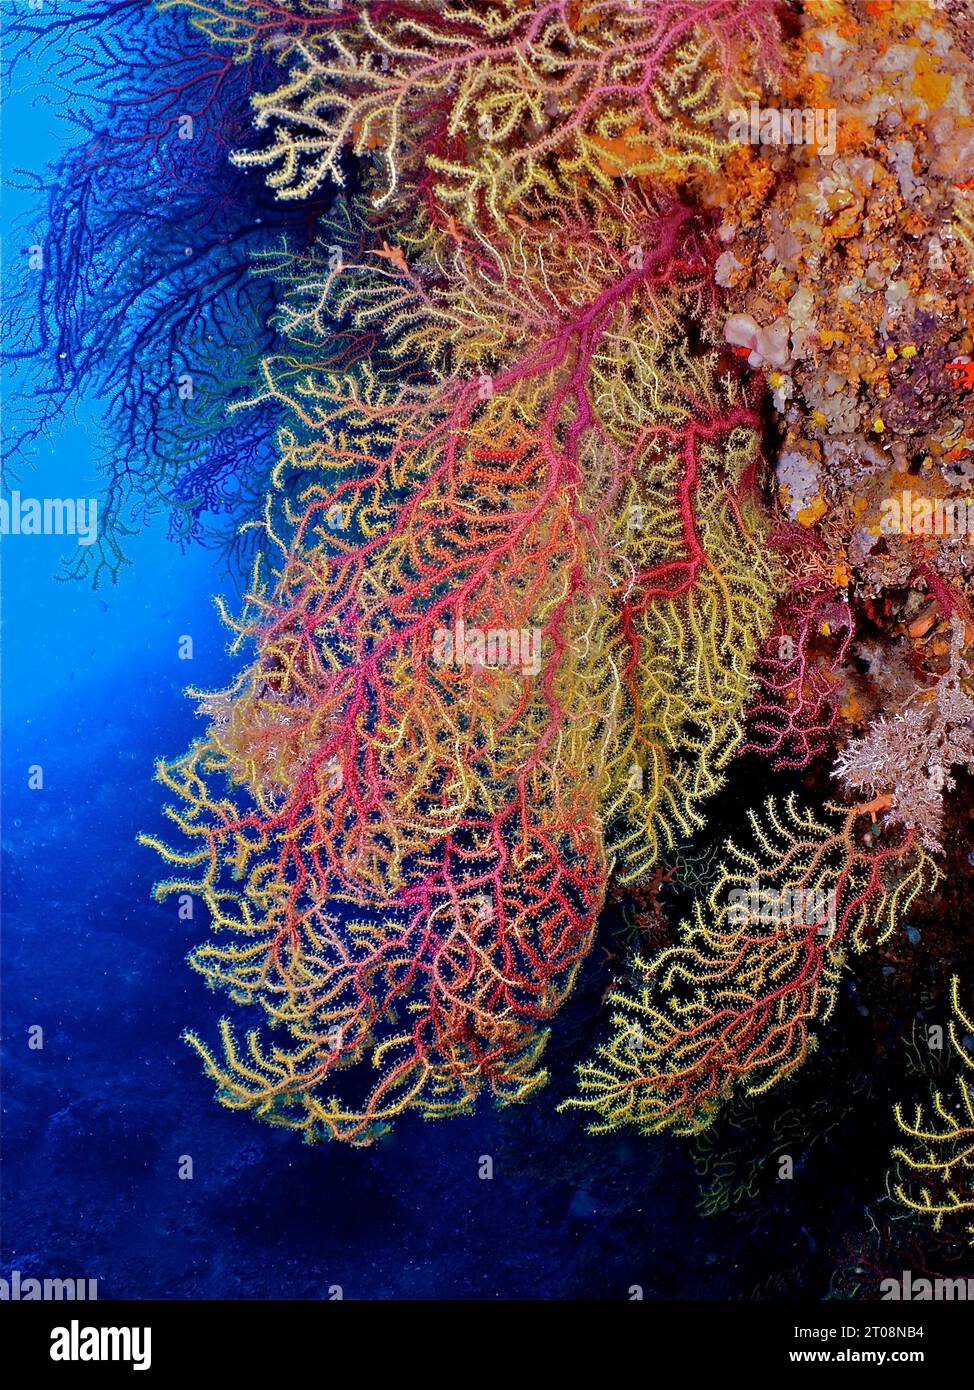 Fouet de mer adolescent (Paramuricea clavata), site de plongée Iles Medes, l' Estartit, Costa Brava, Espagne, Mer Méditerranée Banque D'Images